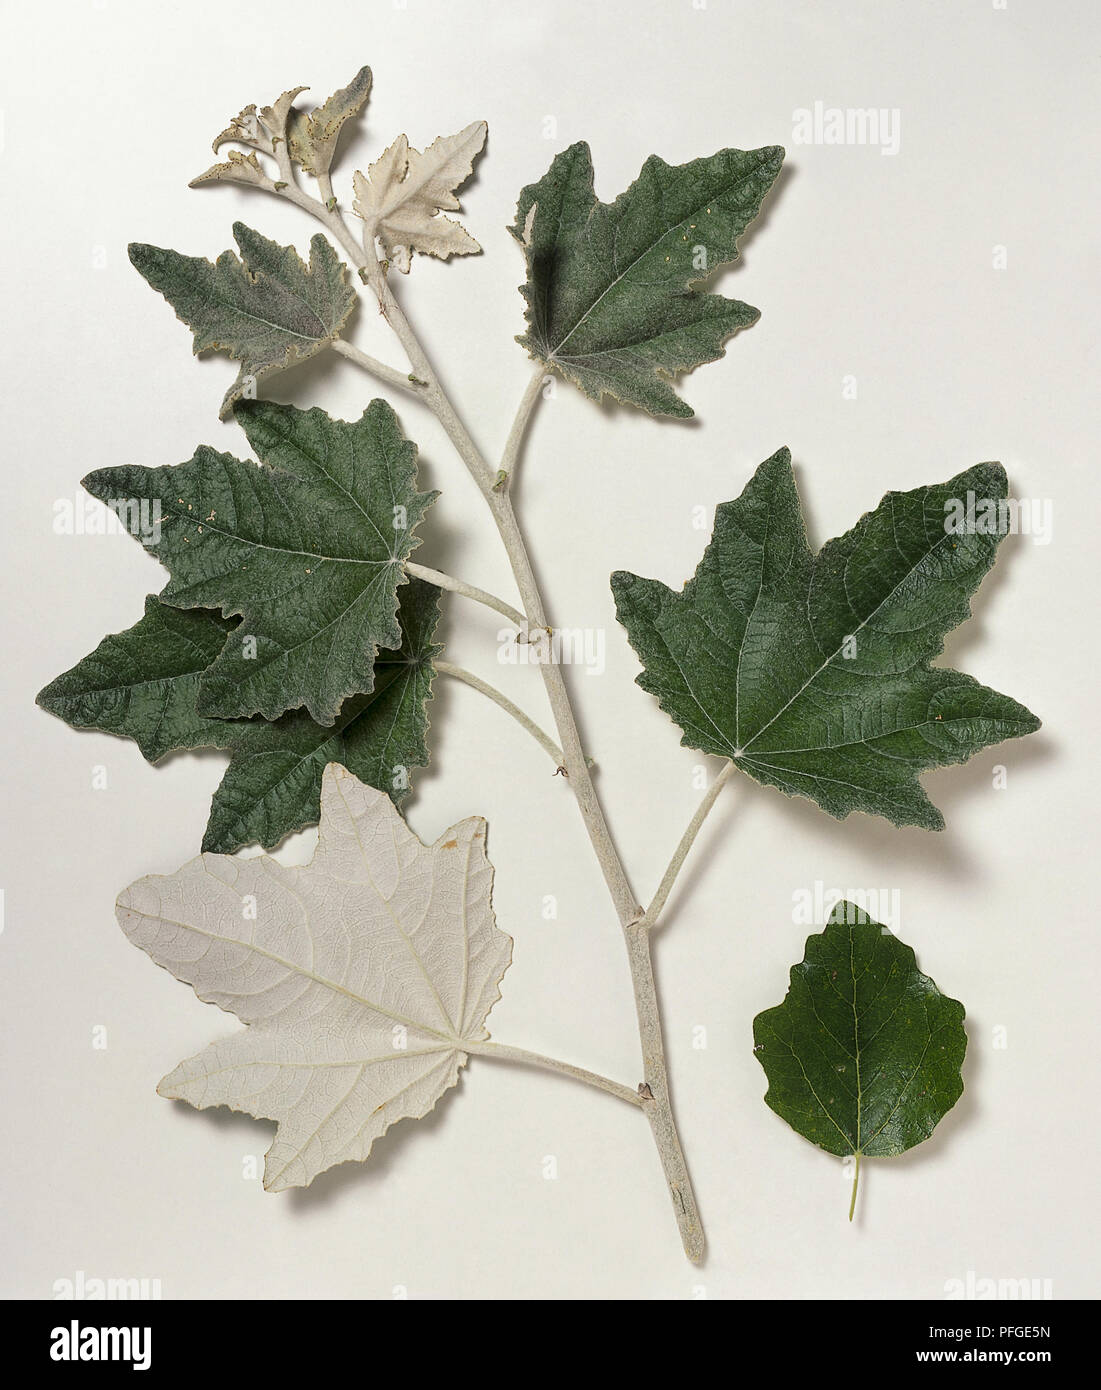 , Salicaceae Populus alba, weiße Pappeln, grau Zweig Tipp, starke Triebe tragen grüne Ahorn - wie Blätter mit weißer Unterseite und Weiße, behaarte Junge Blätter. Stockfoto